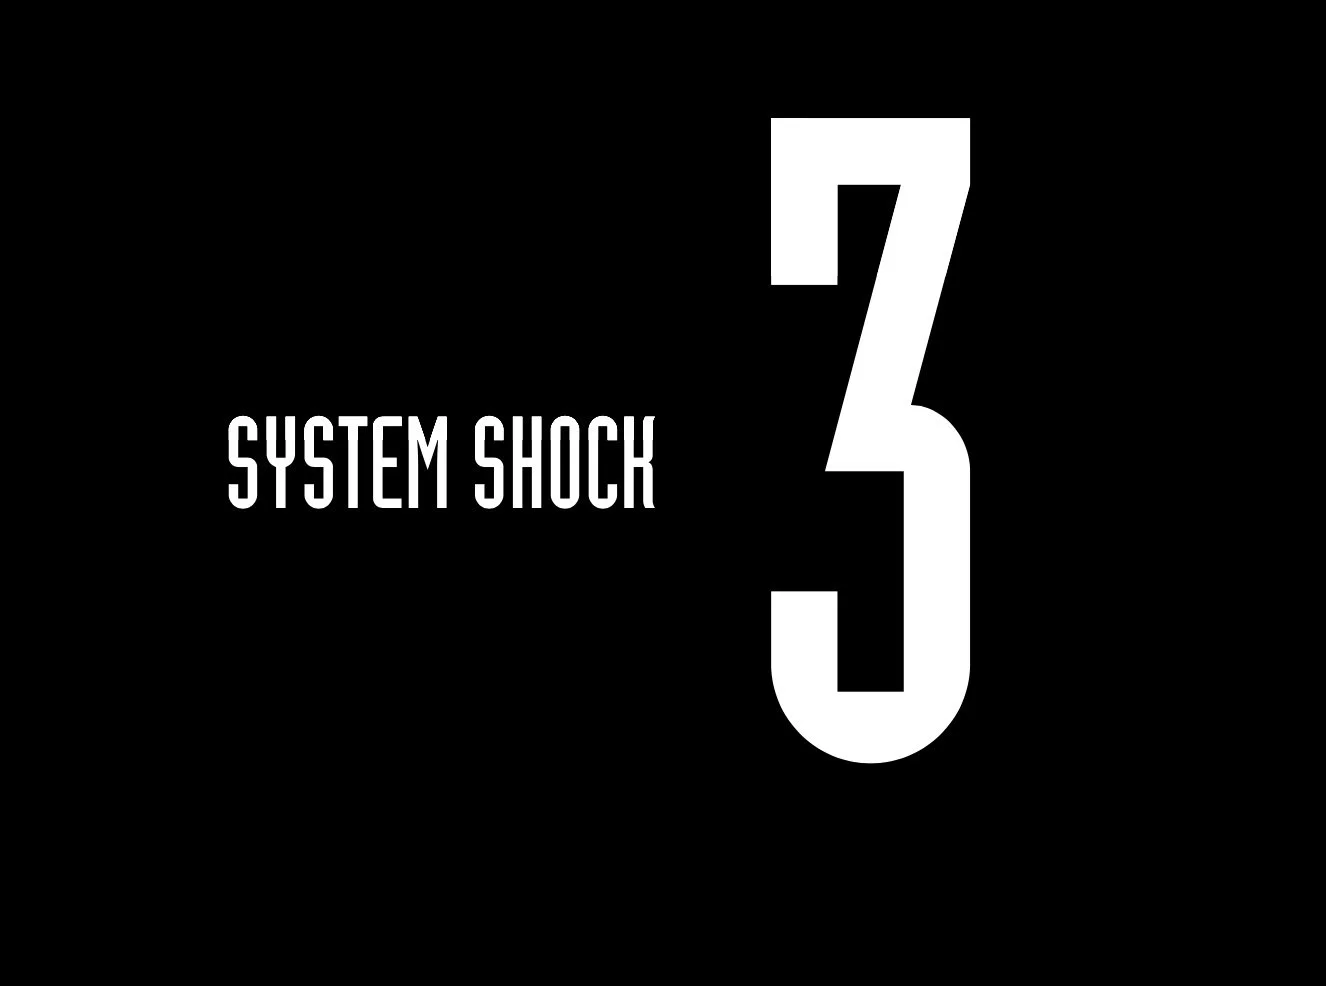 Запущен тизер-сайт System Shock 3 - фото 1